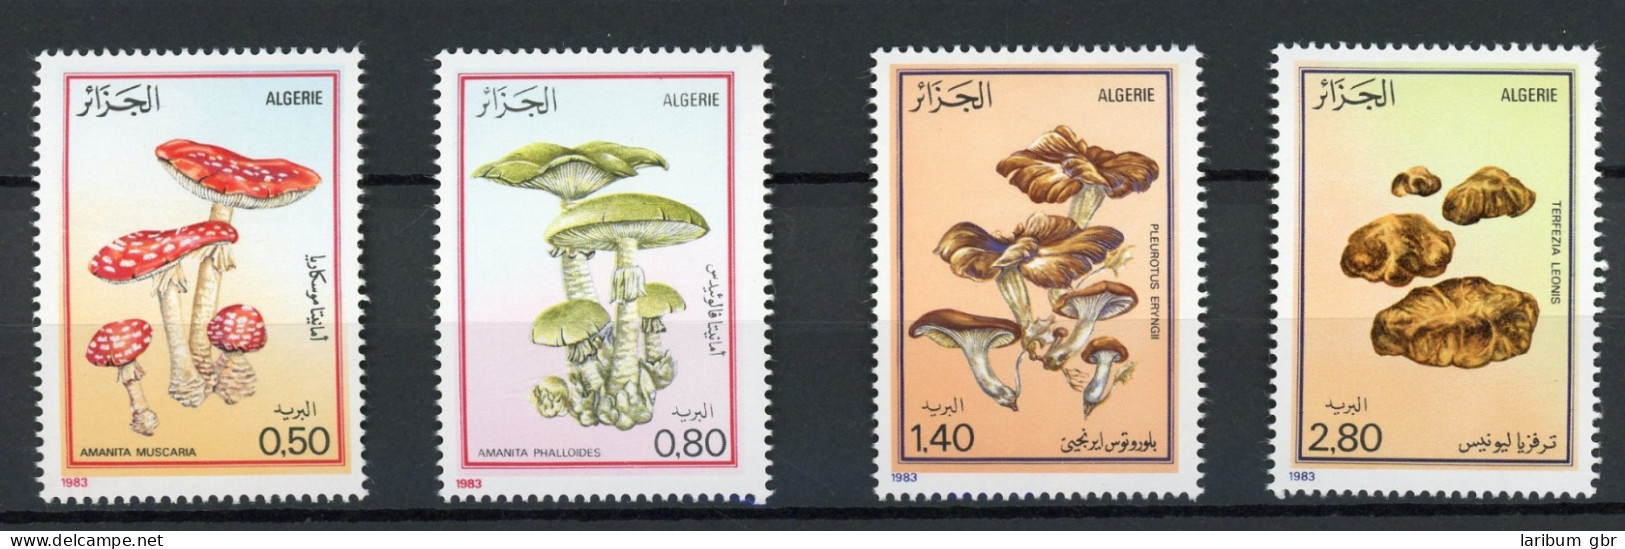 Algerien 827-30 Postfrisch Pilze #IJ001 - Algerien (1962-...)